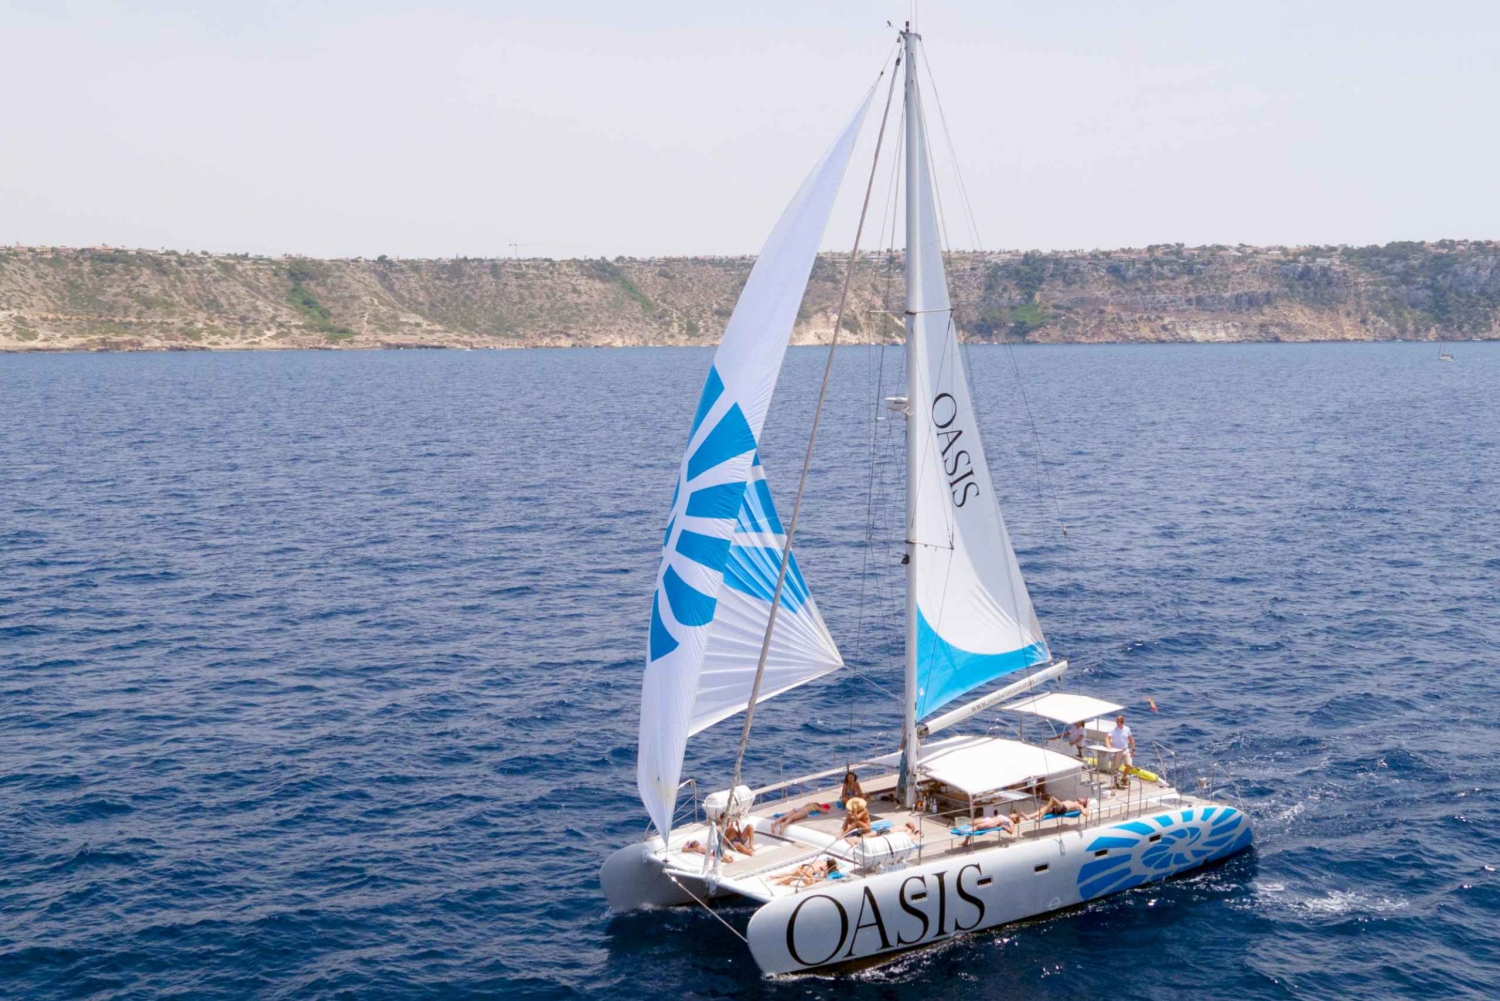 Palma di Maiorca: Tour deluxe in catamarano con pasto